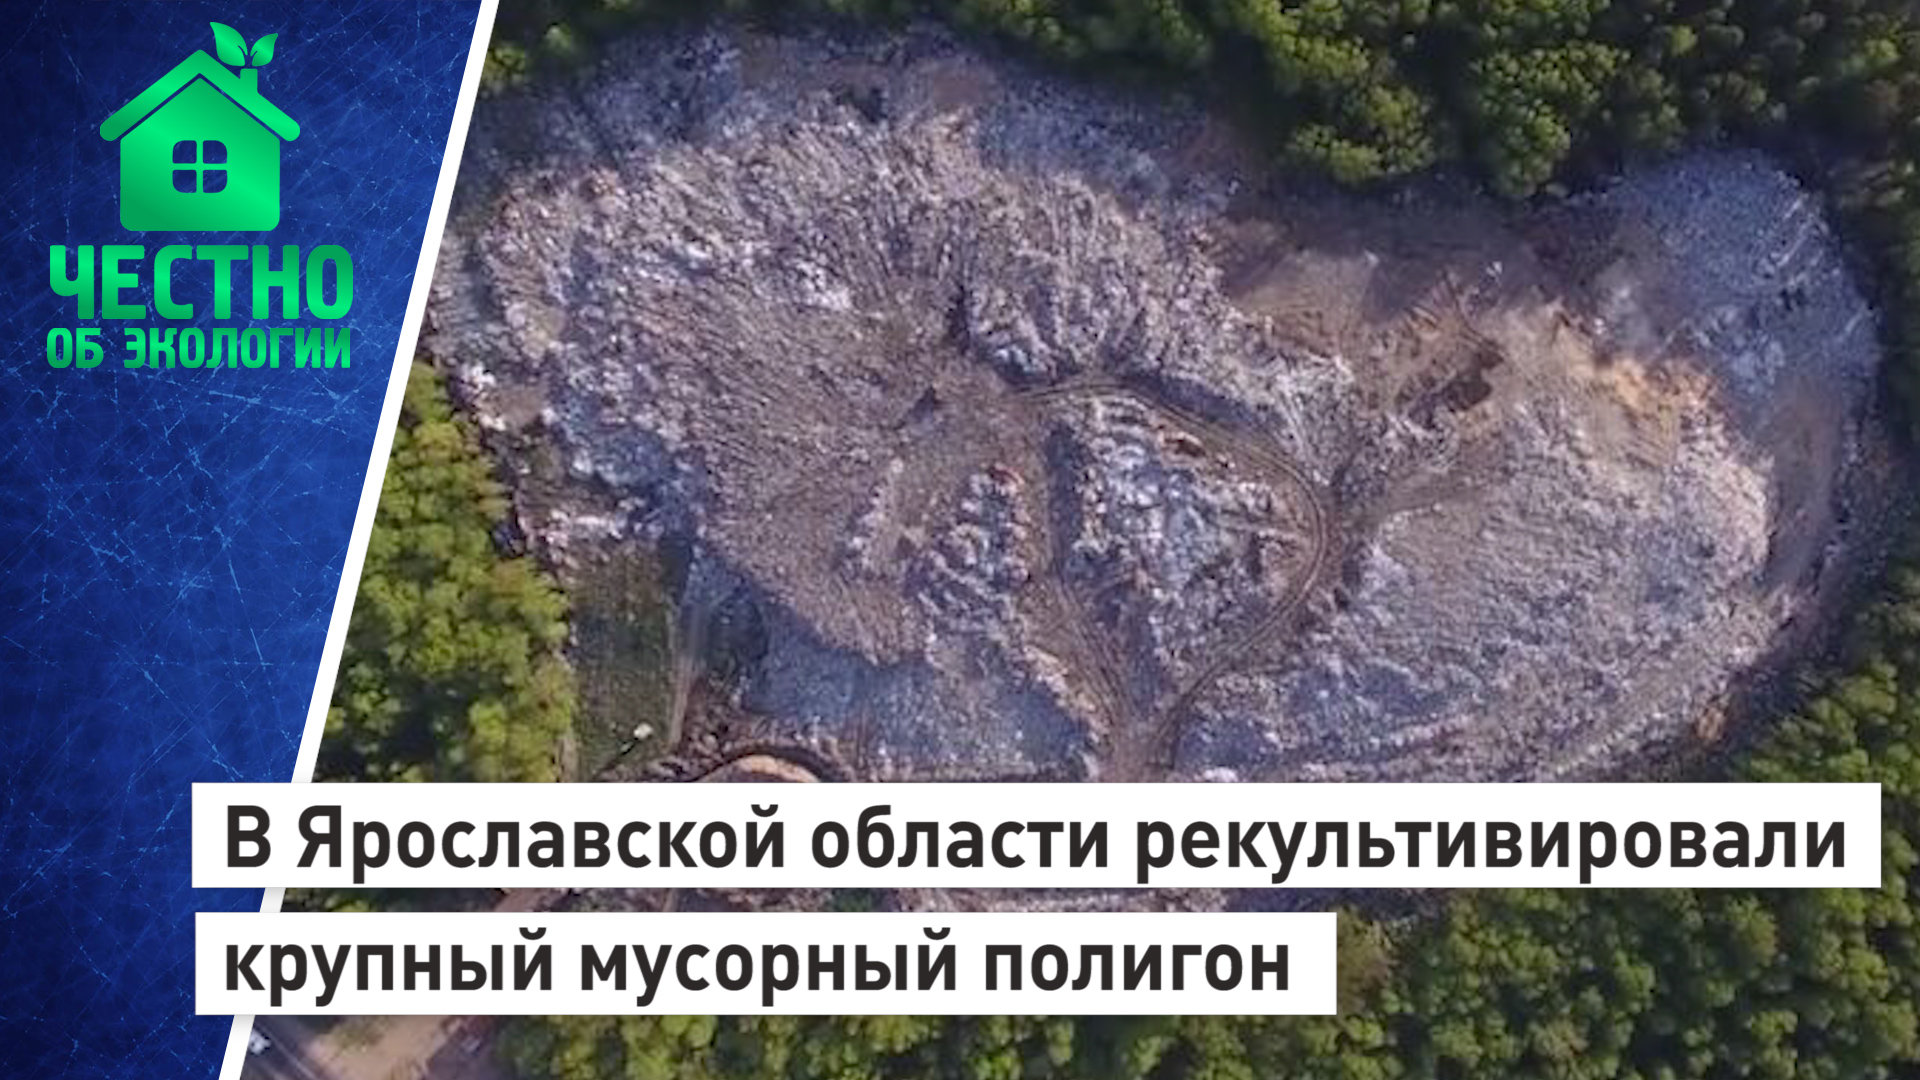 В Ярославской области рекультивировали крупный мусорный полигон.